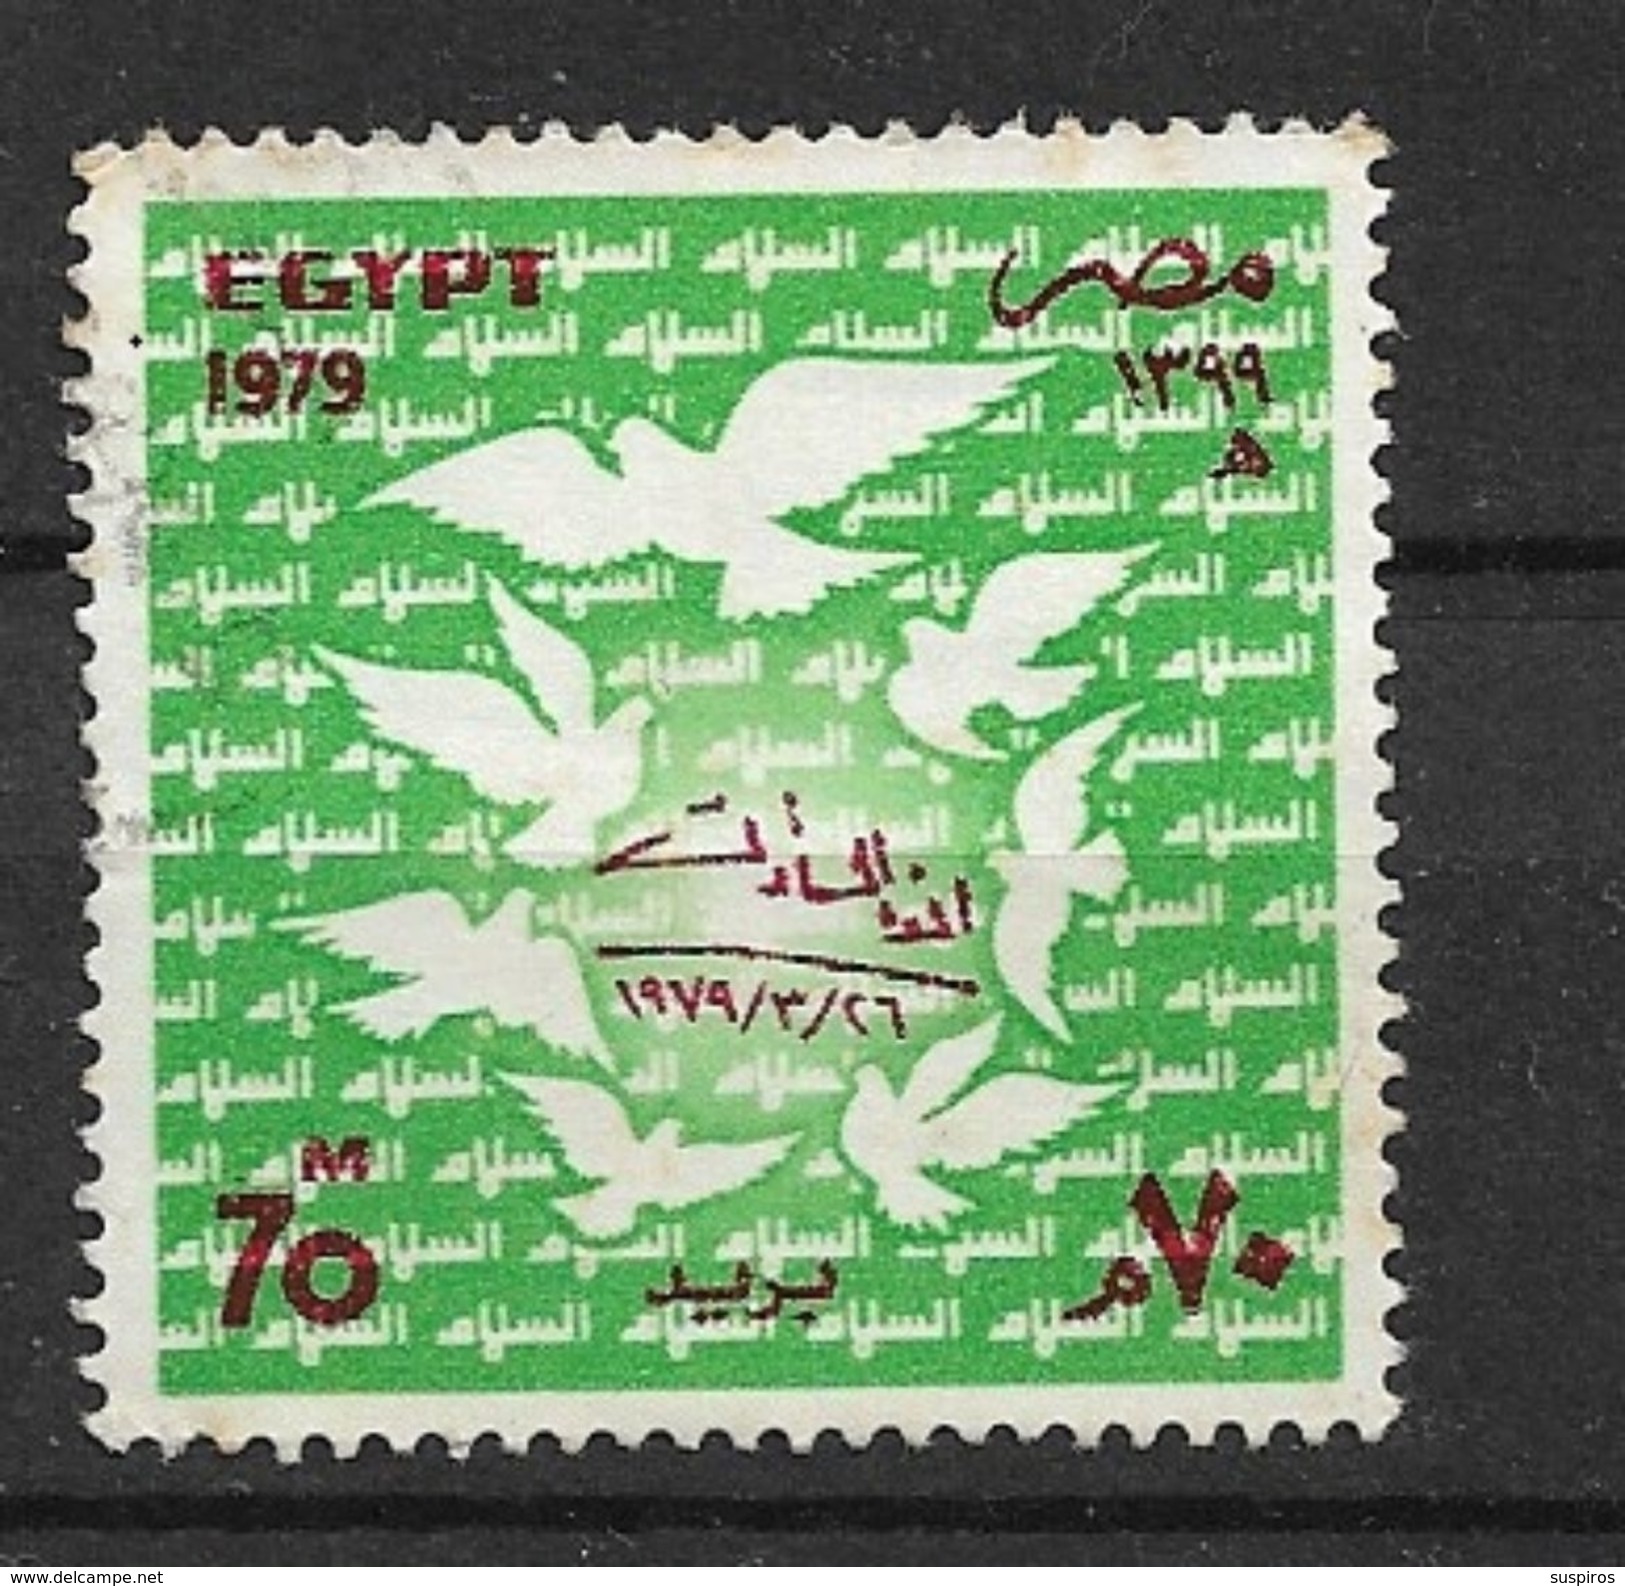 Egitto - Egypt   1979 Signing Of Egyptian-Israeli Peace Treaty  BIRDS PIGEONS    U - Oblitérés